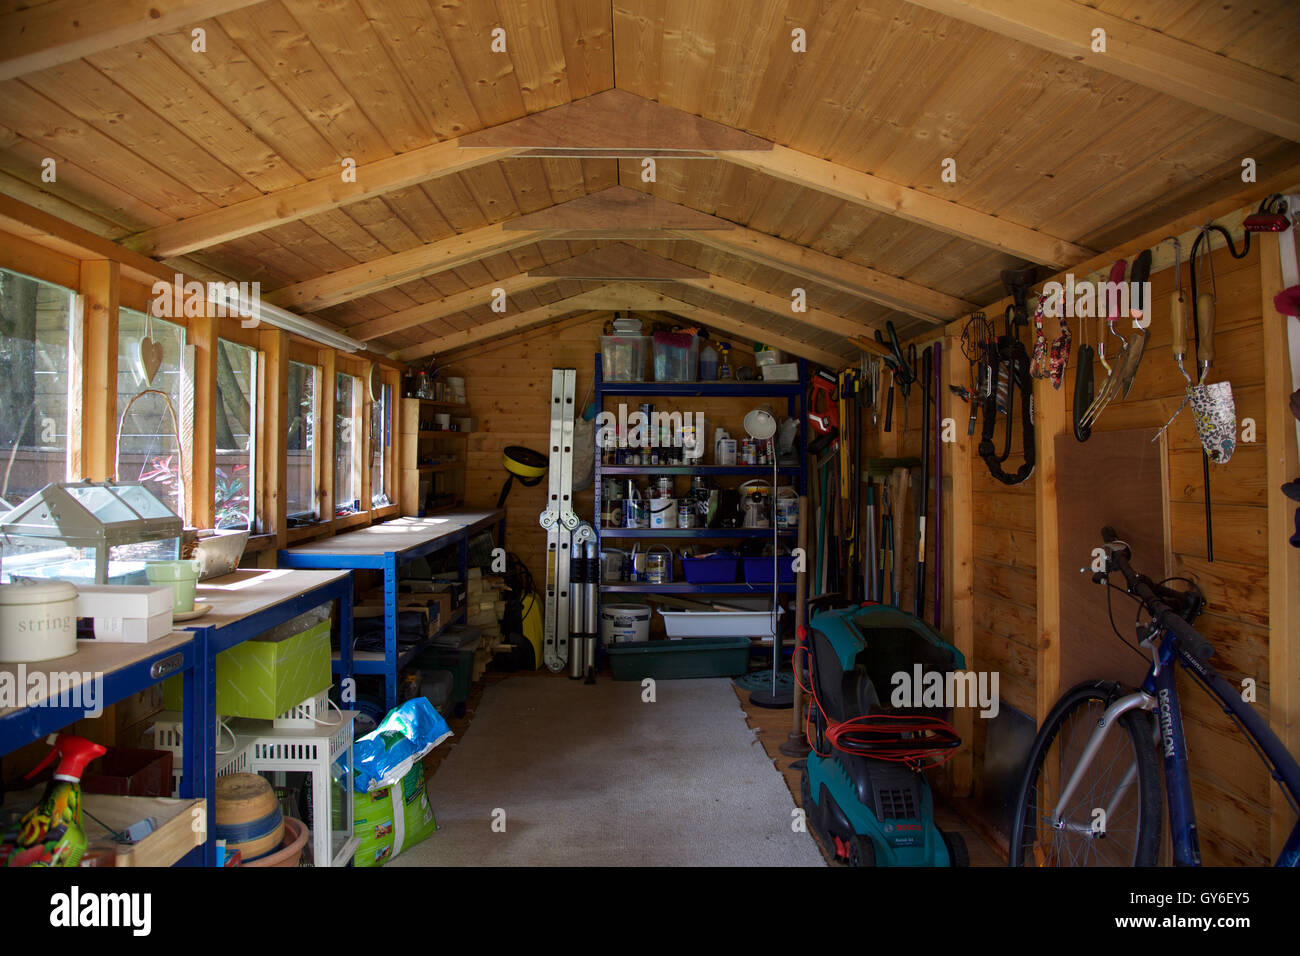 All interno del giardino in legno capannone con tetto con banco di lavoro strumenti pensili serra tosaerba e ripiani con della vernice e la scaletta Foto Stock